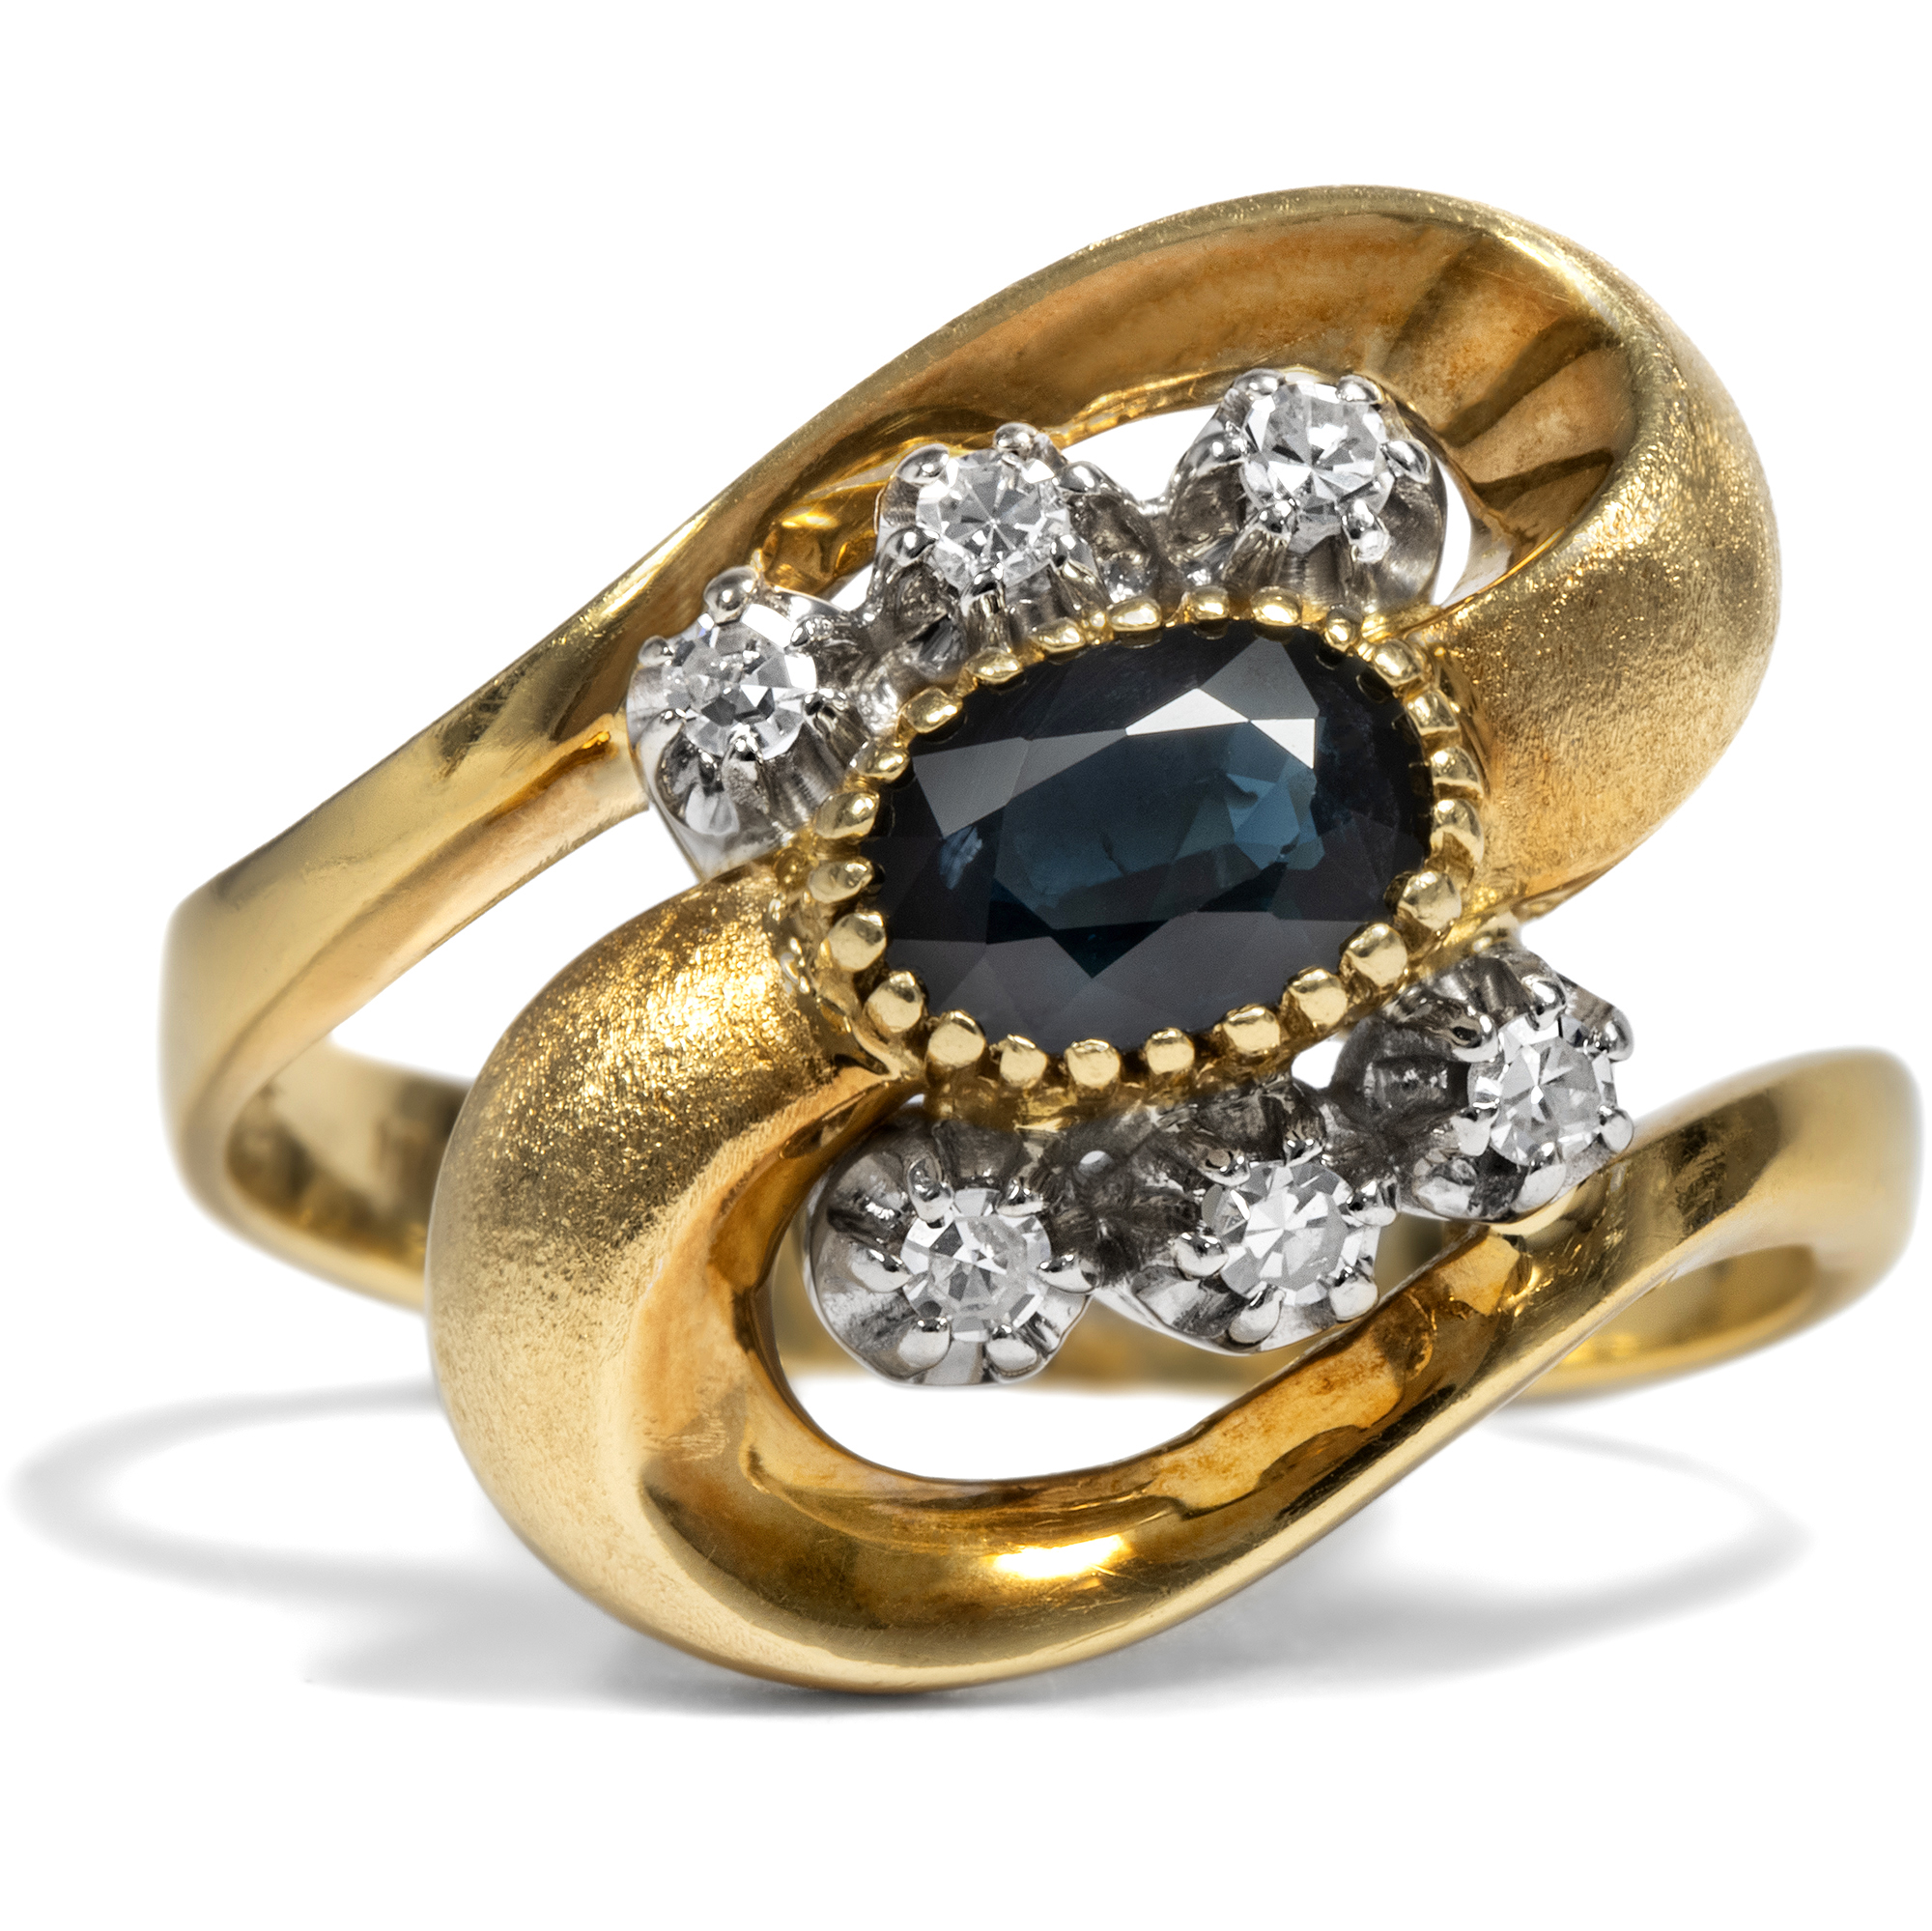 Dynamischer vintage Ring mit Saphir & Diamanten in Gold, USA um 1970